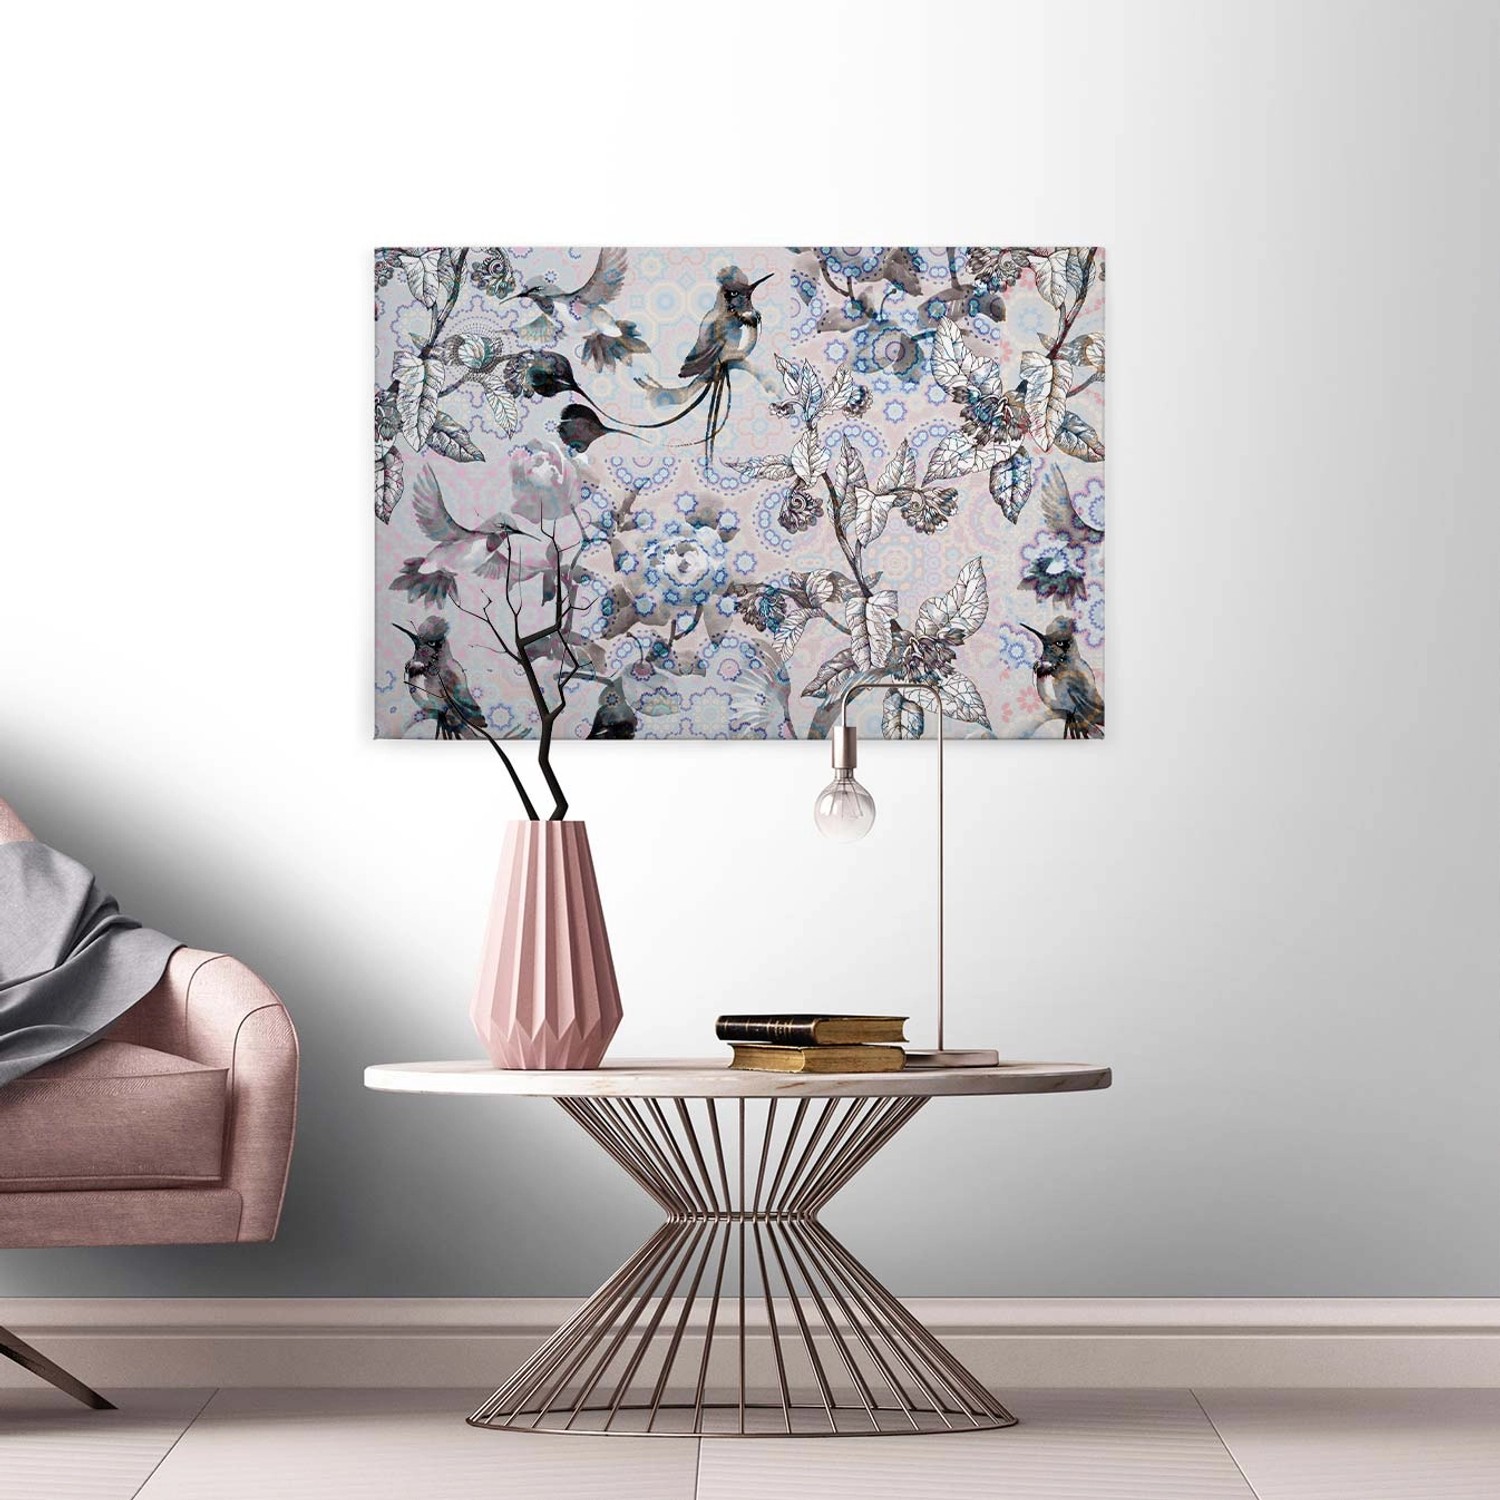 Bricoflor Bild Auf Leinwand Vogel Und Blumen Wandbild 90 X 60 Cm Quer Leinwandbild Mit Vögeln Hellgrau Blau